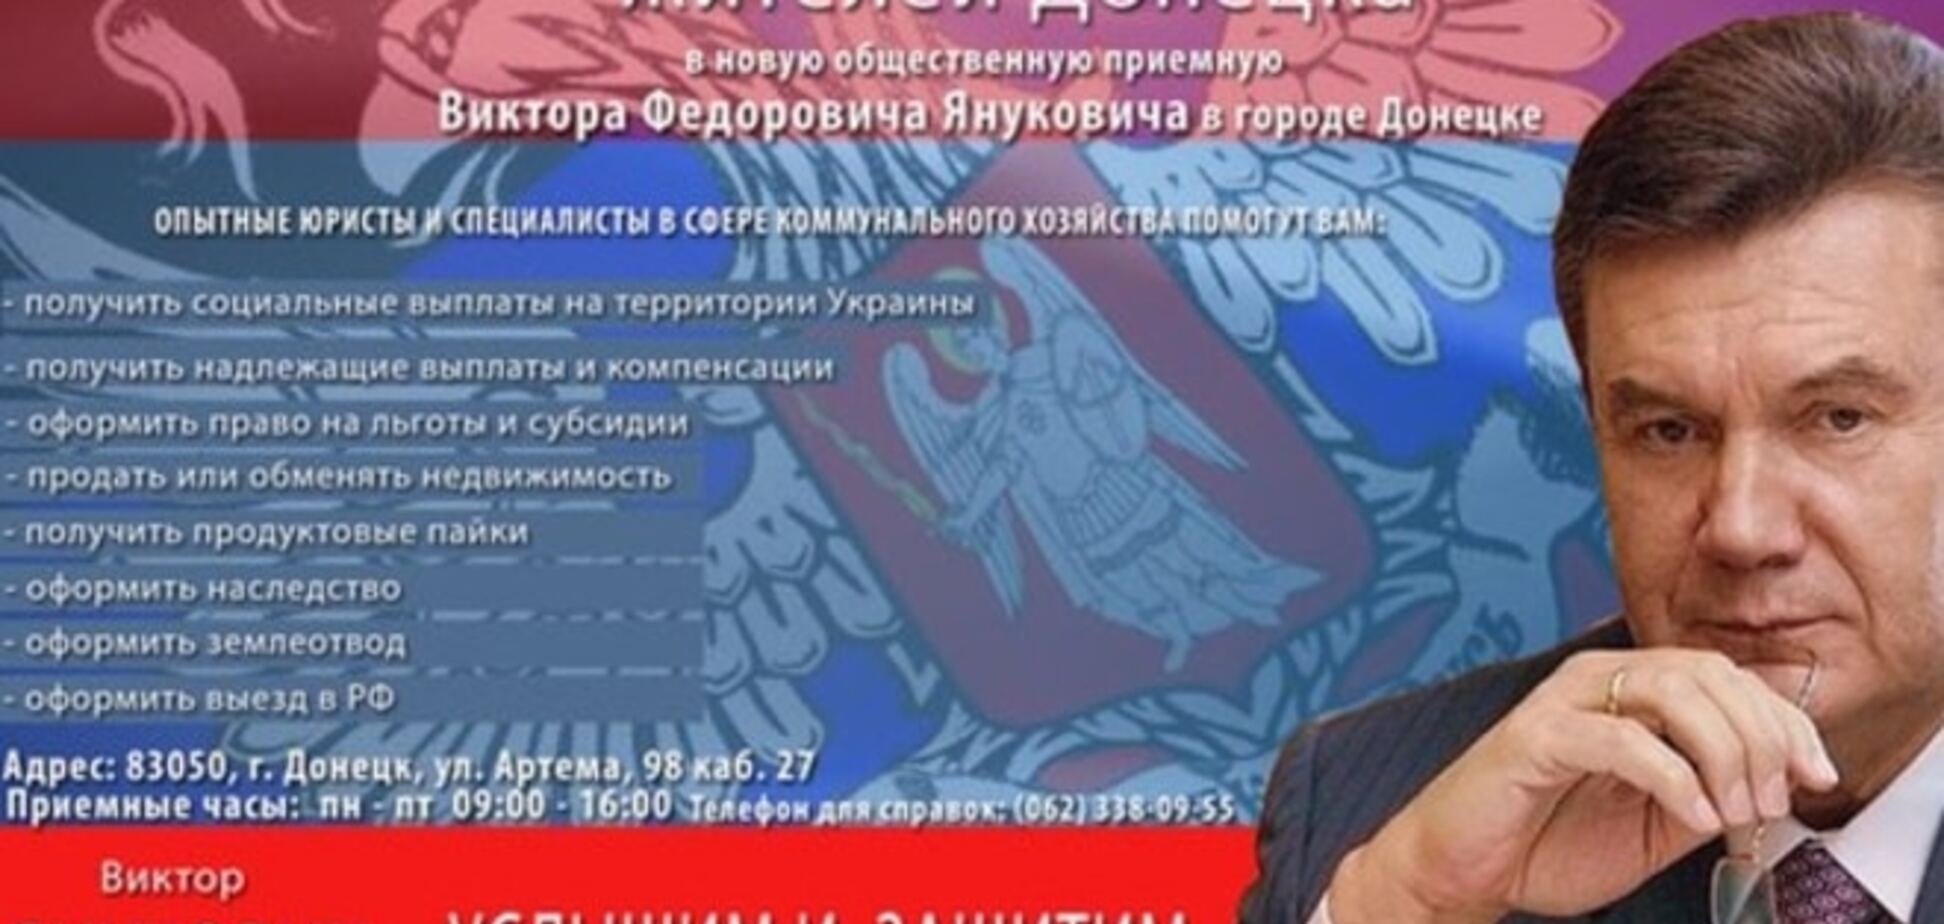 I'll be back! 'Я живой' Янукович материализовался на агитках Донбасса: фотофакт